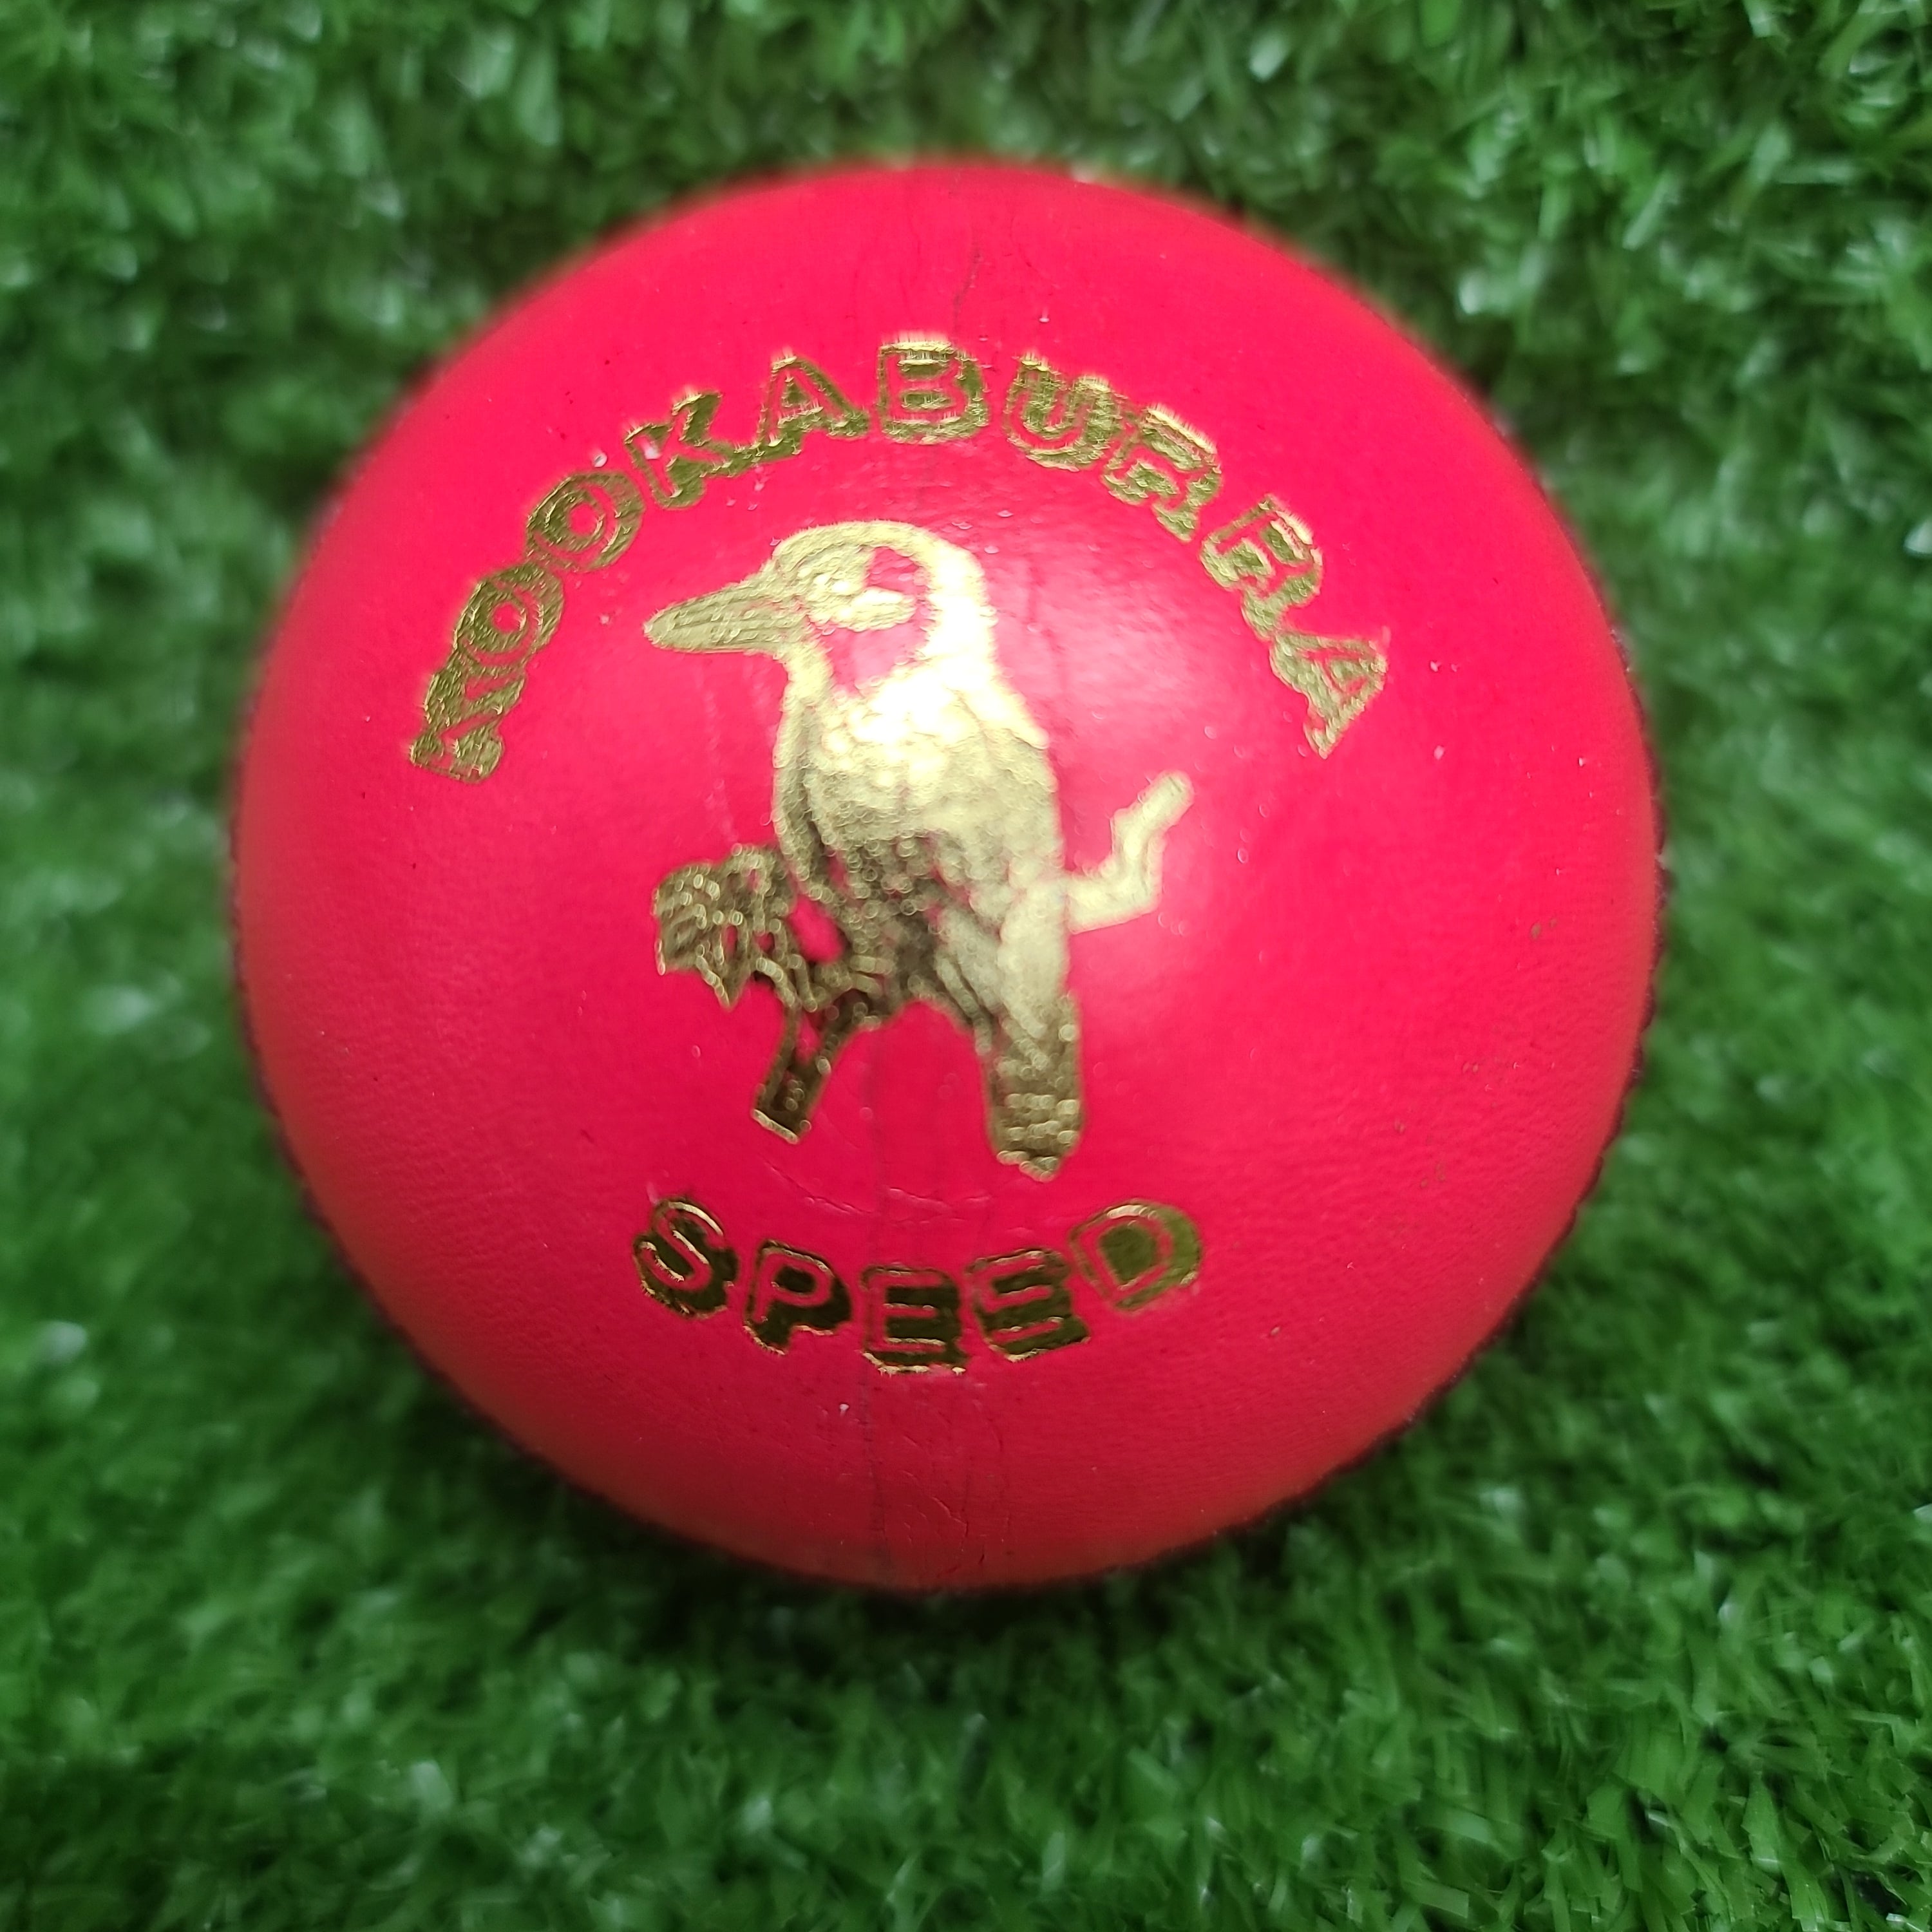 Kookaburra Speed Pink Cricket Ball